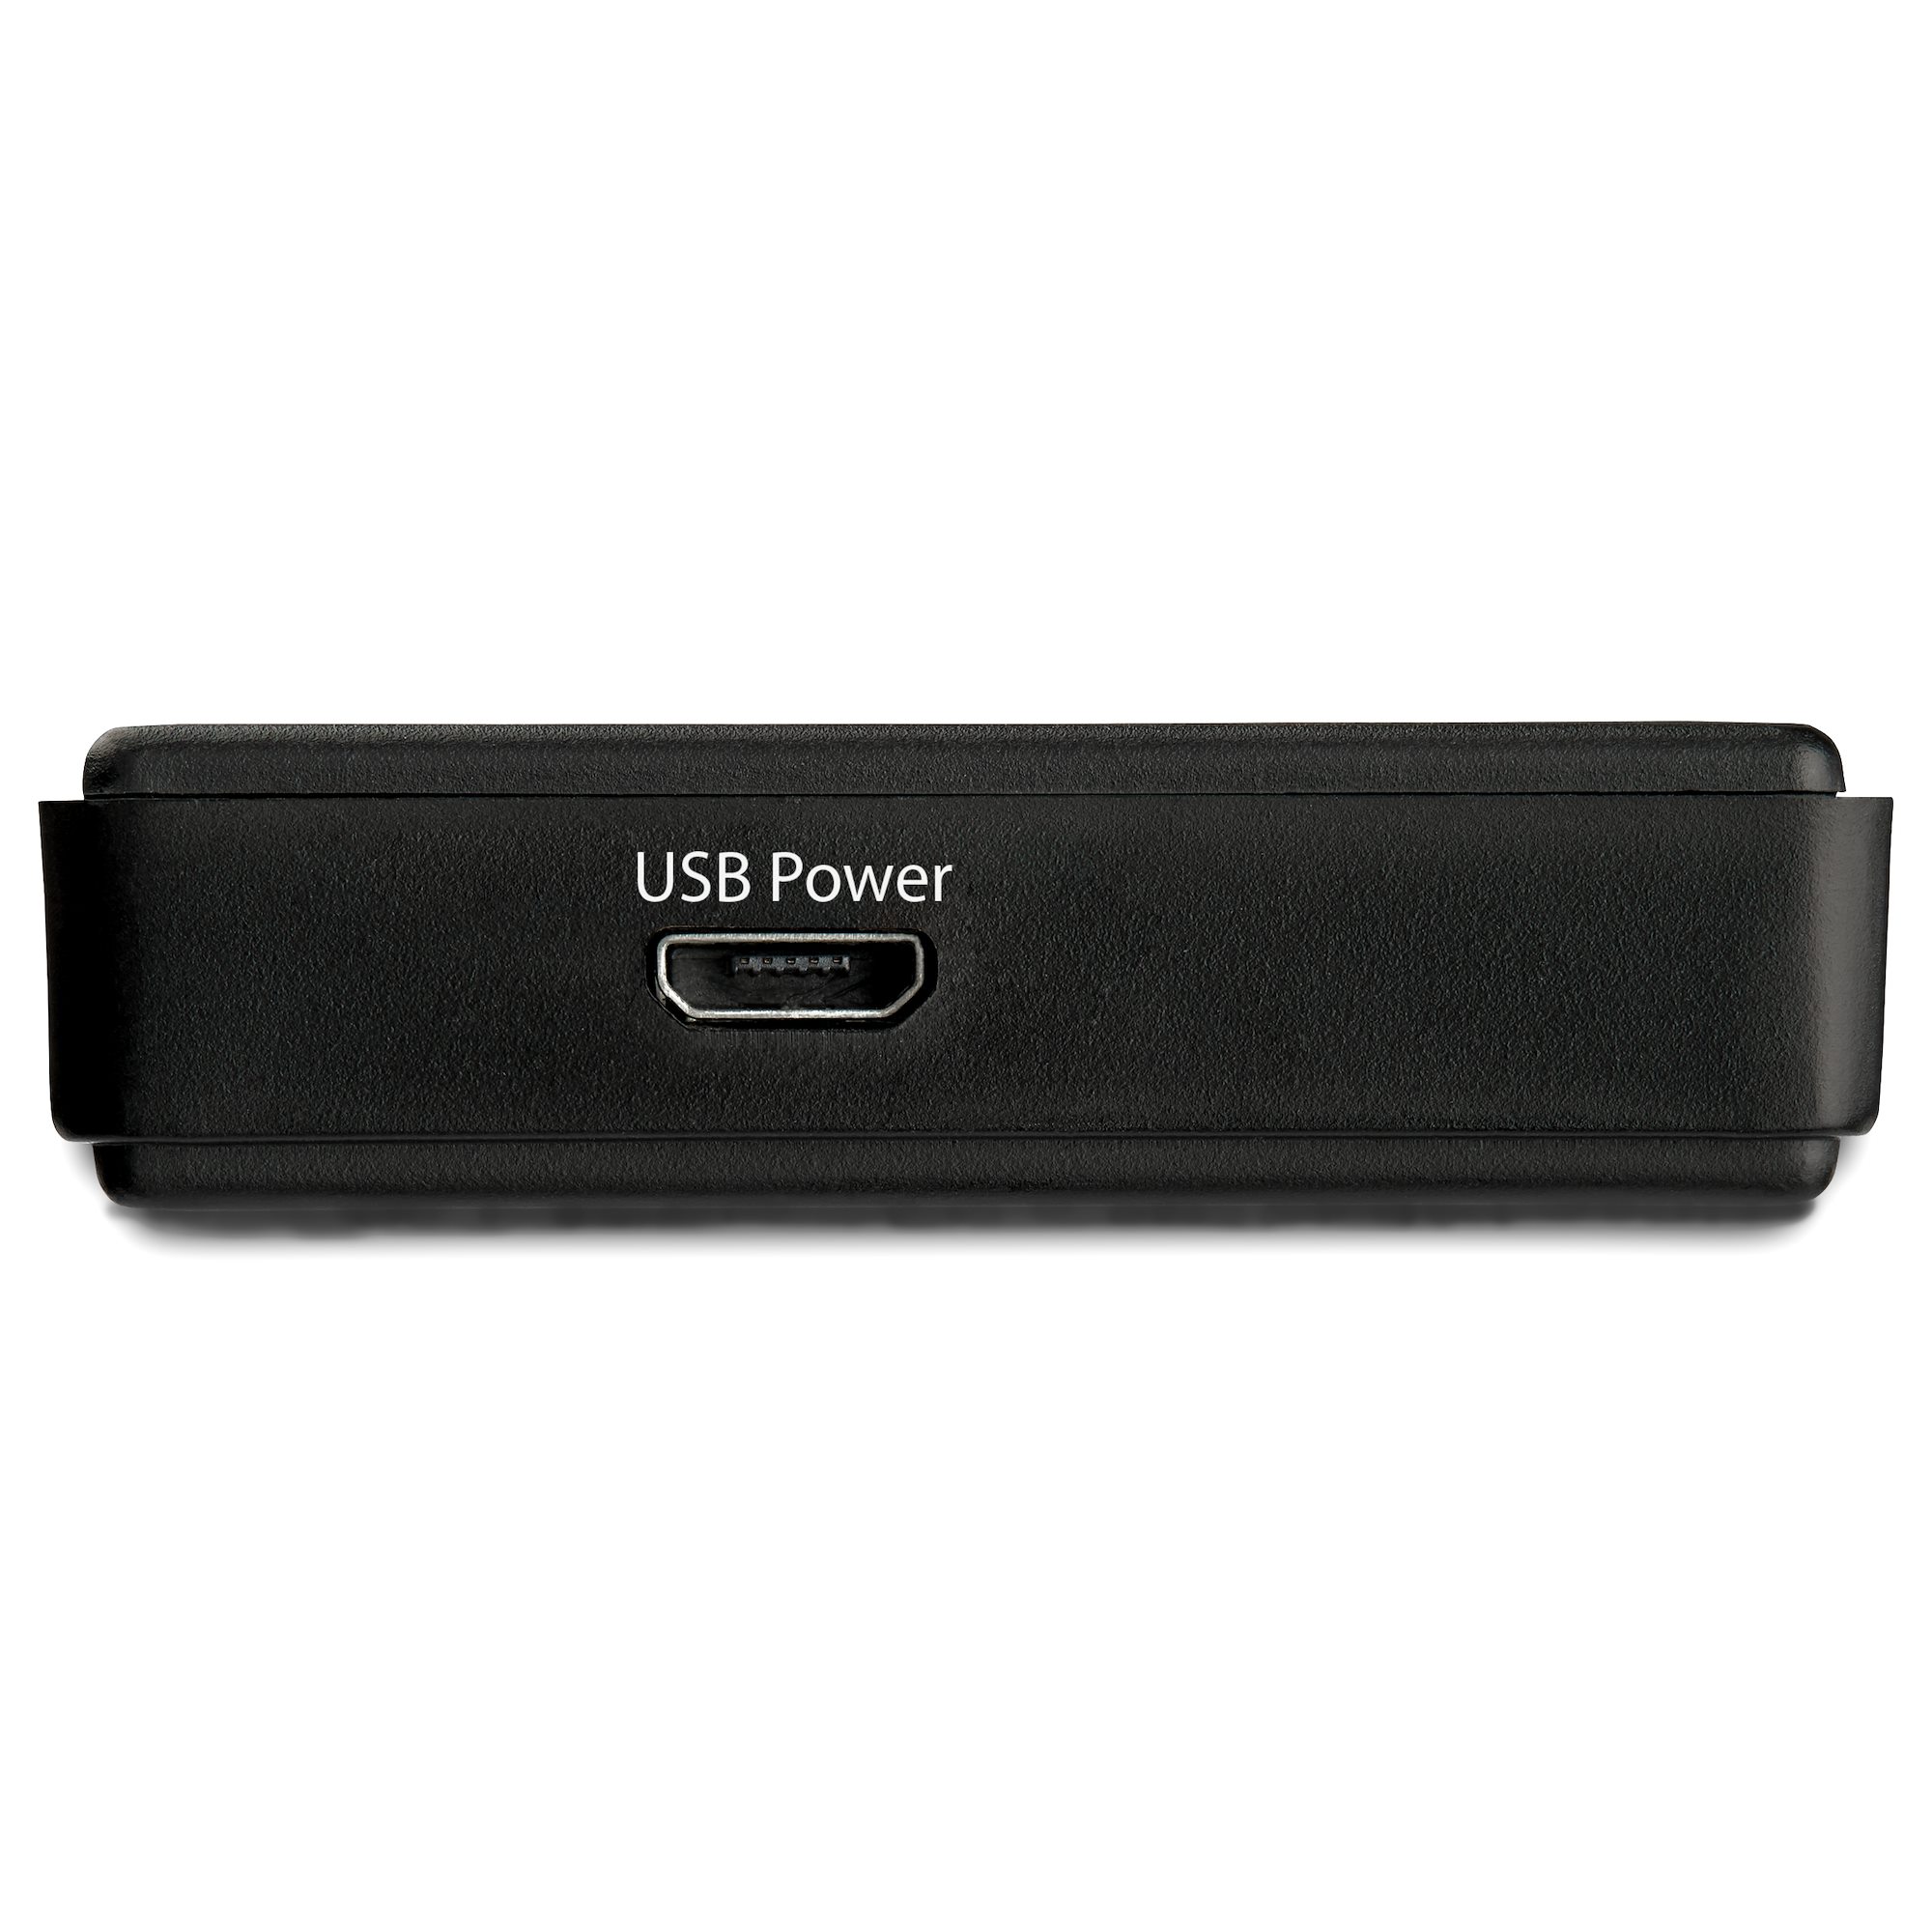 HDMIリピーター 最大14m 4K/60Hz USBバスパワー対応 - HDMI